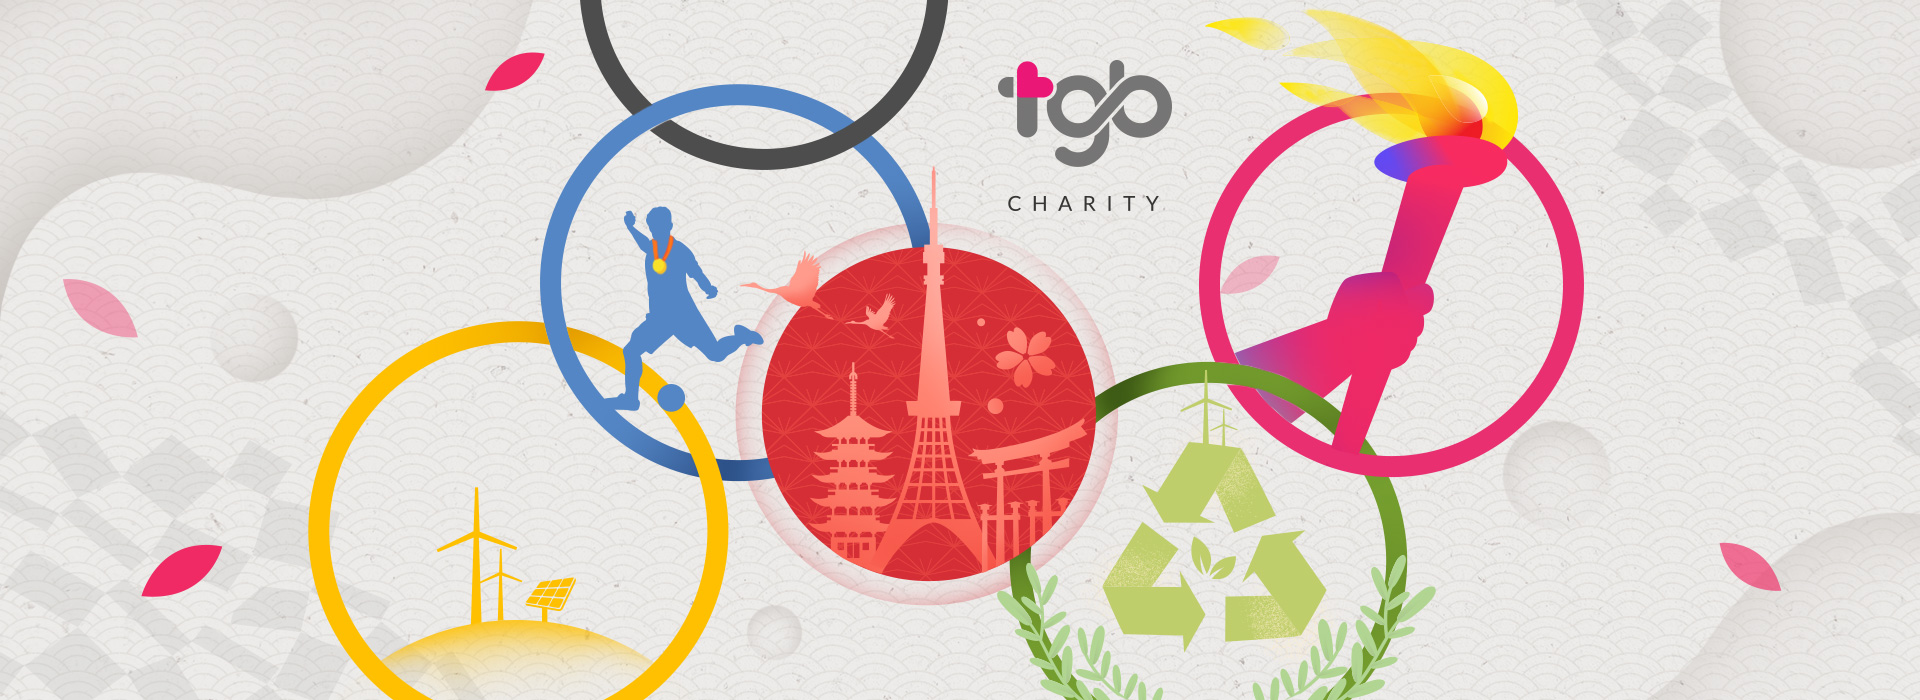 史上最环保奥运─2020东奥 - TGB Charity